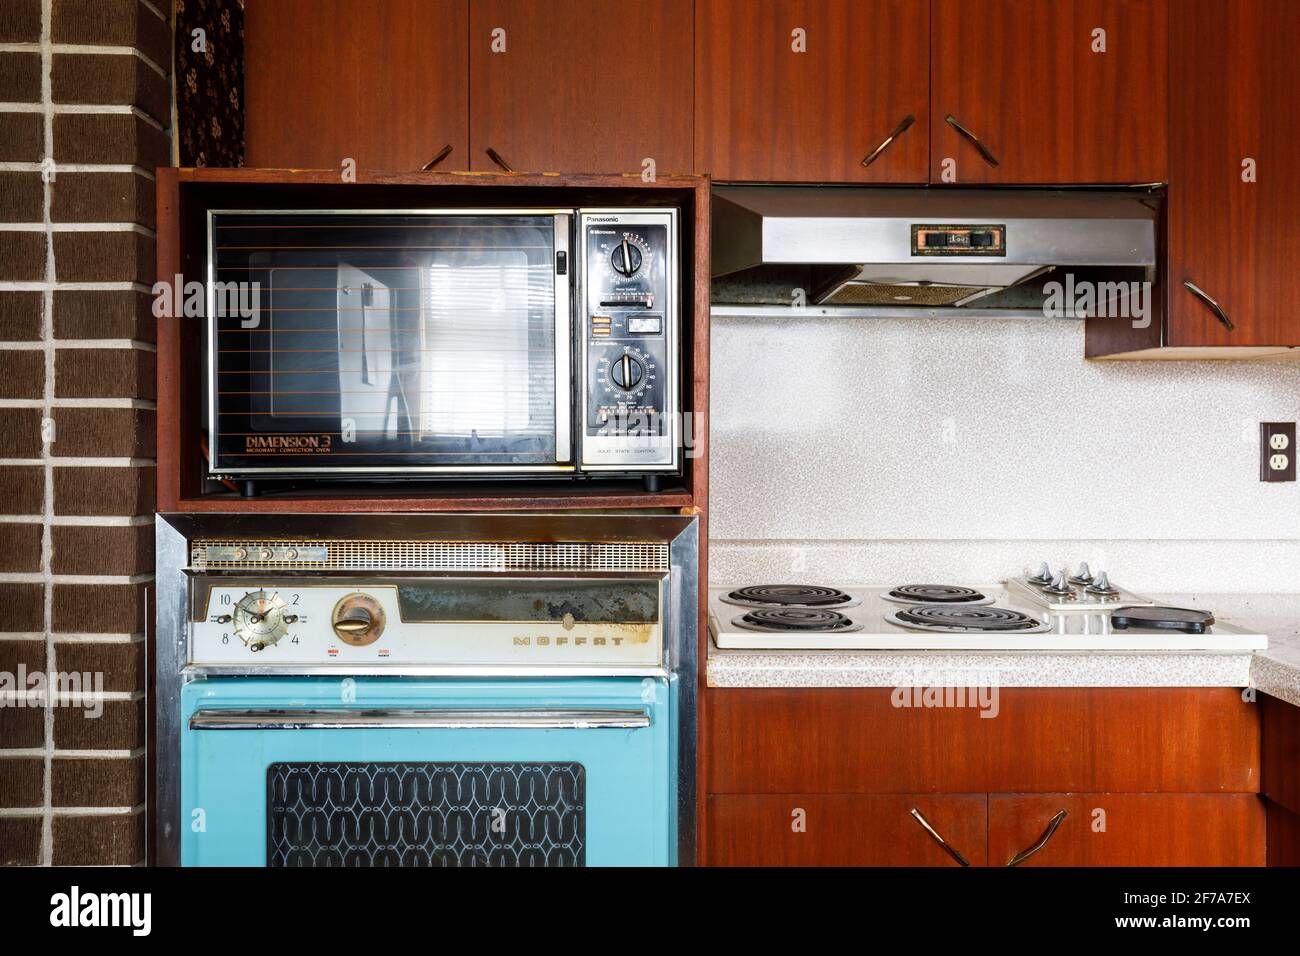 Un 69 Moffat 1980s horno de pared, 3 Panasonic Dimension 40 horno microondas / convección y Moffat 1960s integrado estufa dentro de una cocina retro. Foto de stock